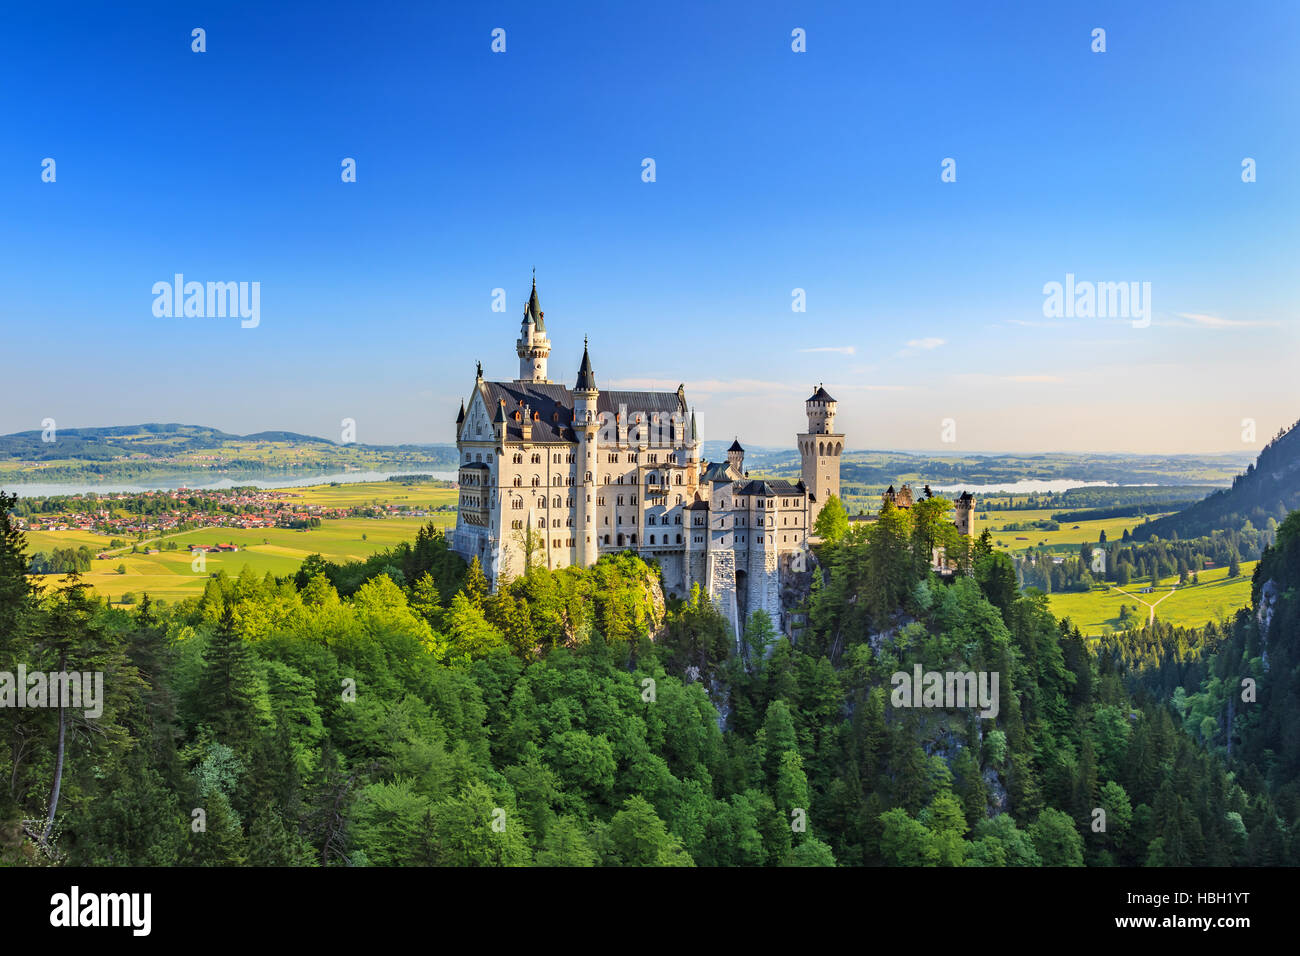 El castillo de Neuschwanstein, Fussen, Alemania Foto de stock